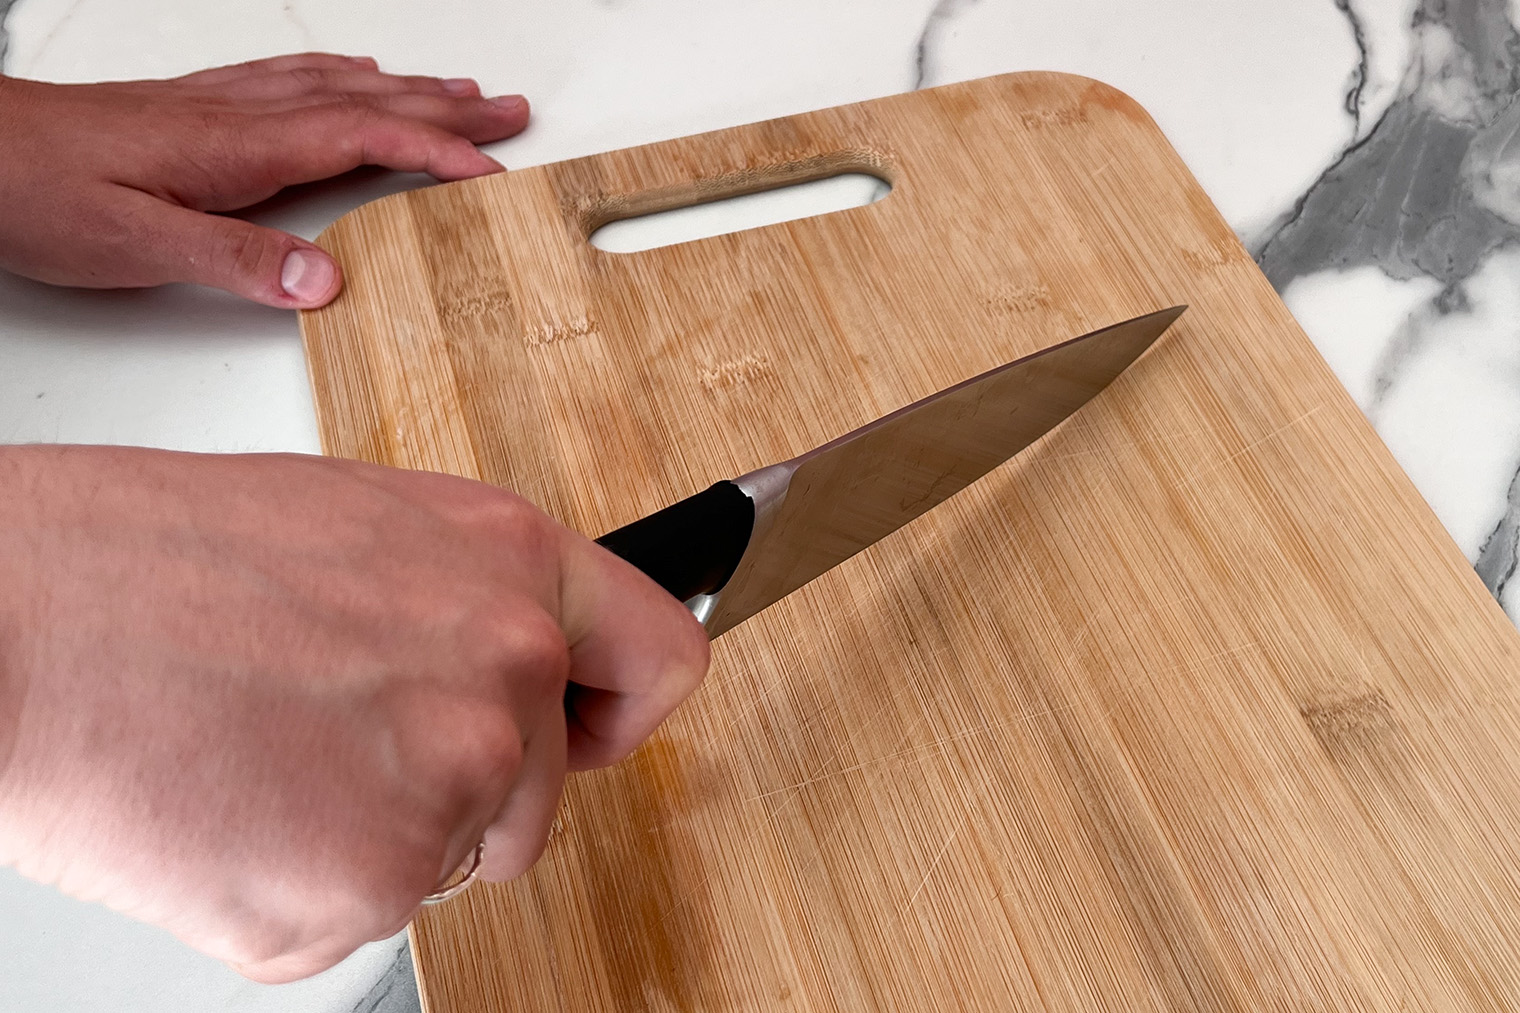 Если взяться слишком далеко, нож будет болтаться по доске, его будет сложно контролировать